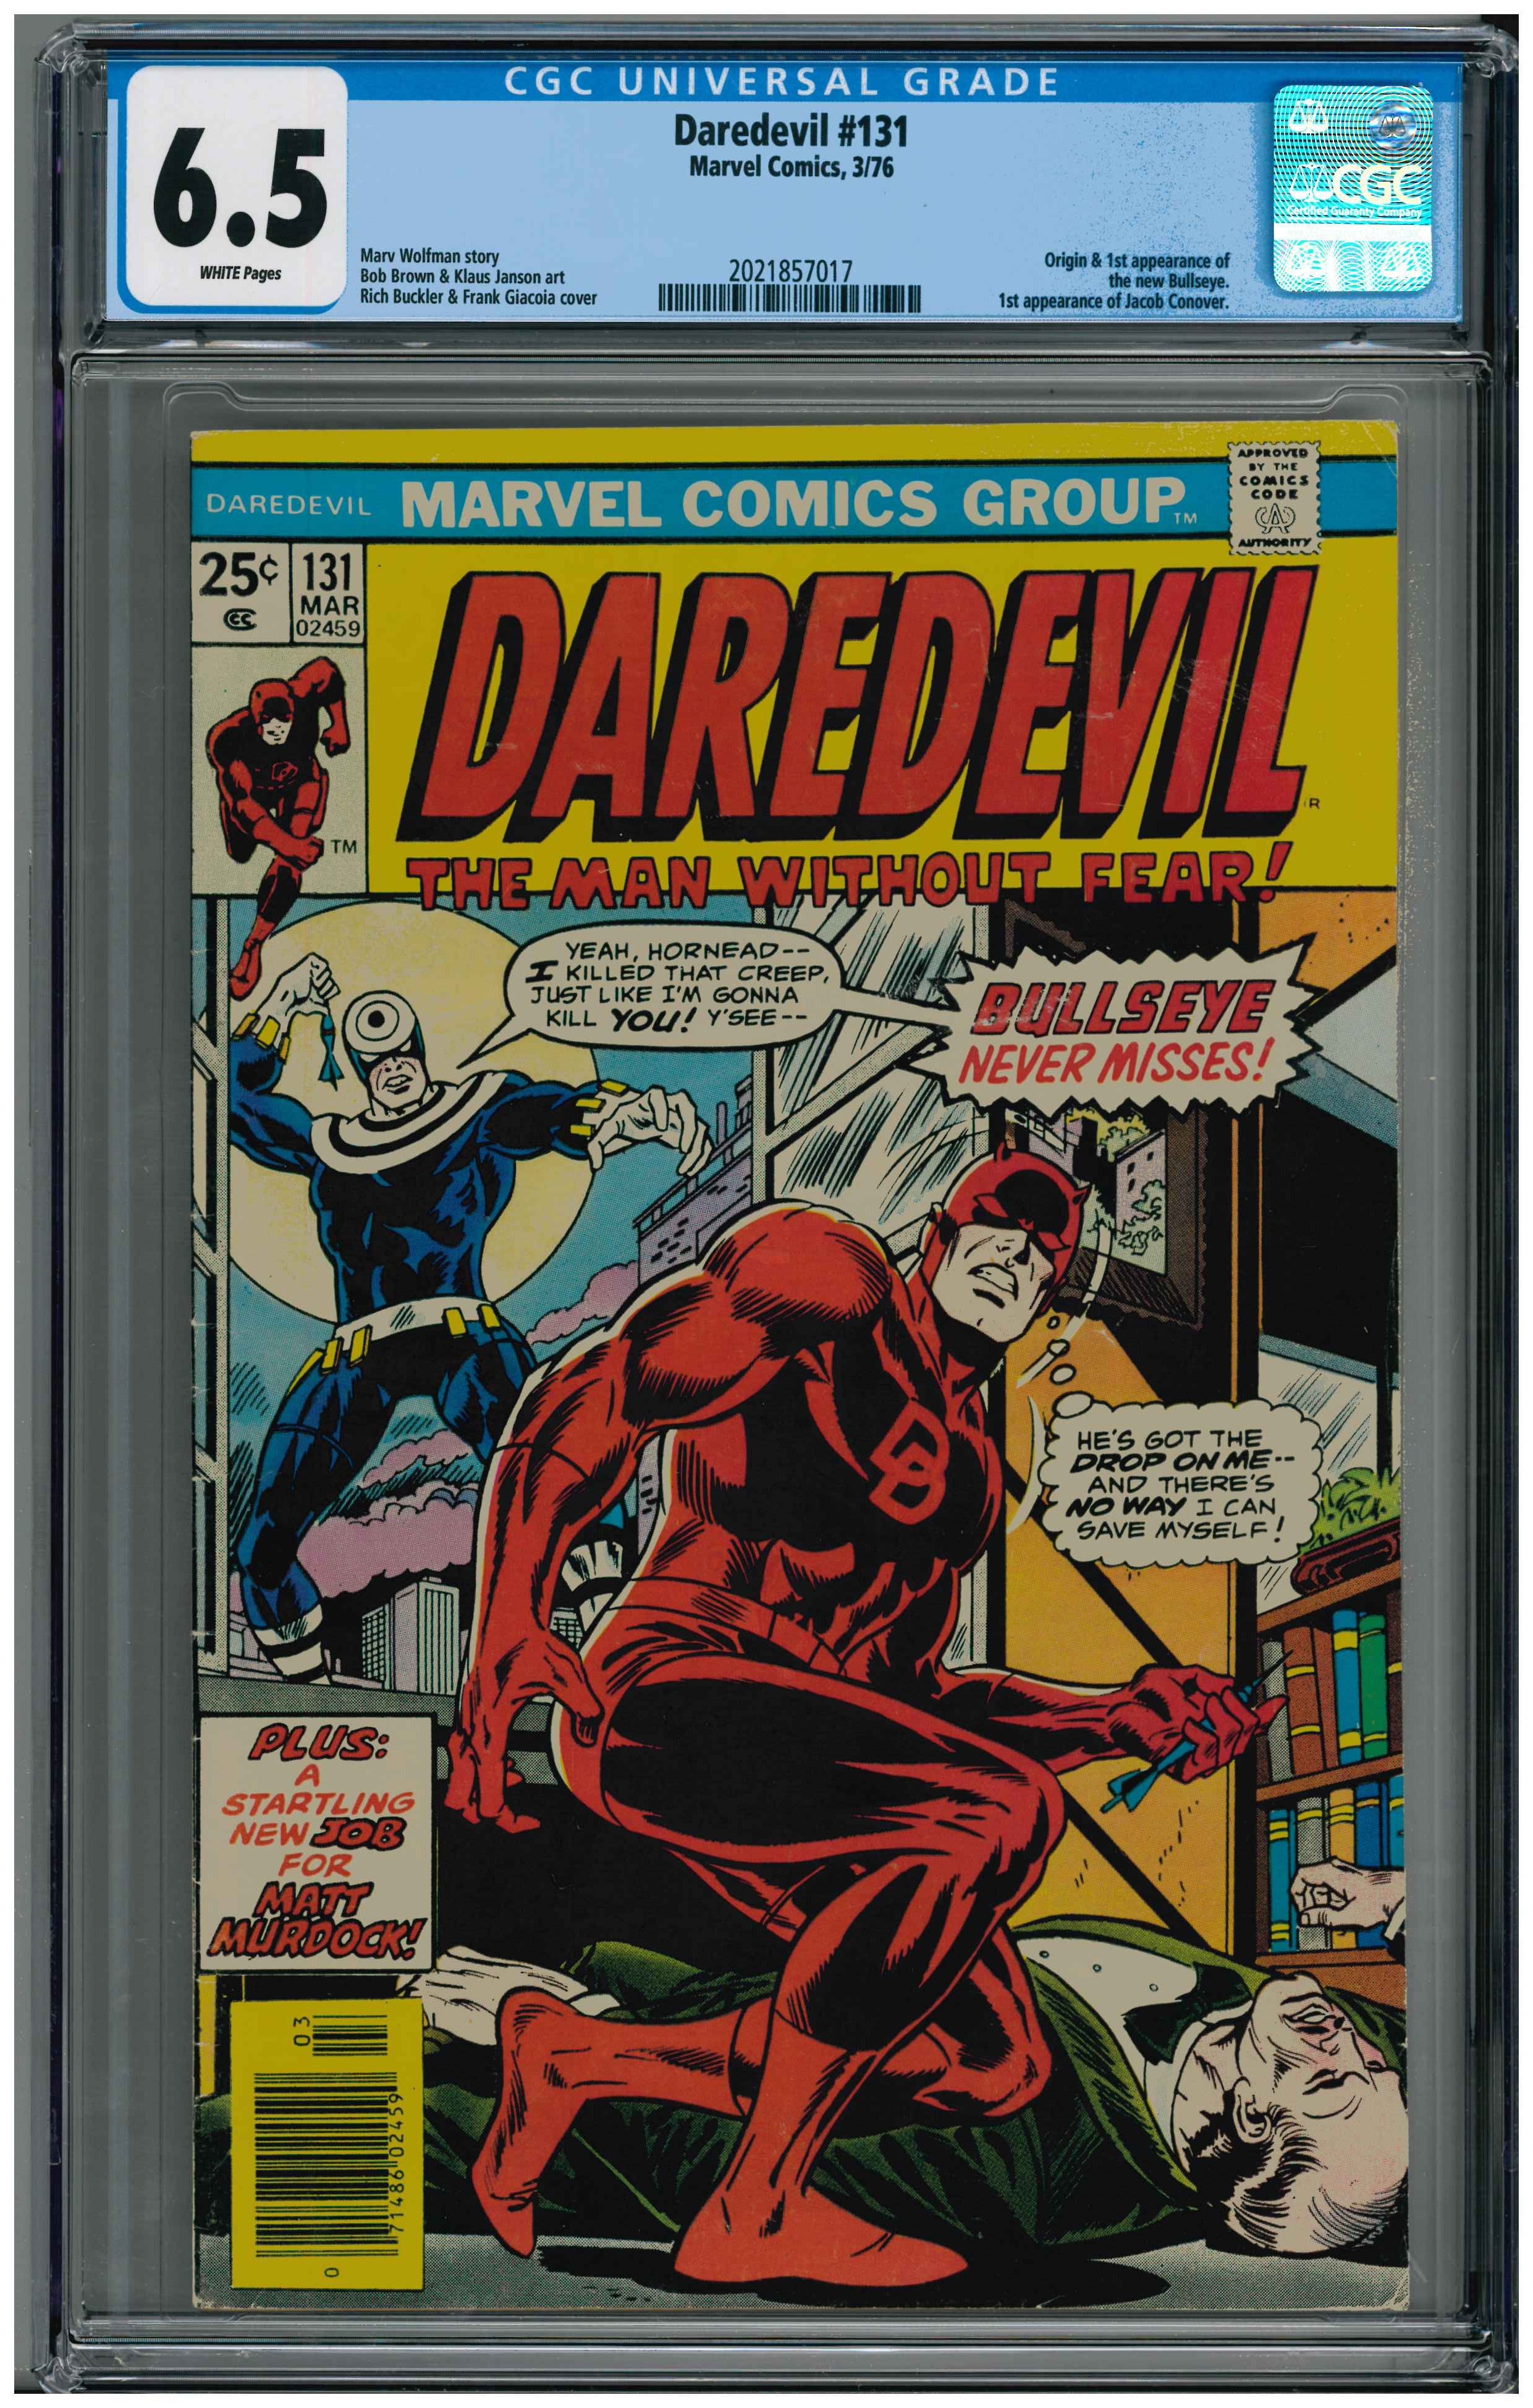 Daredevil #131